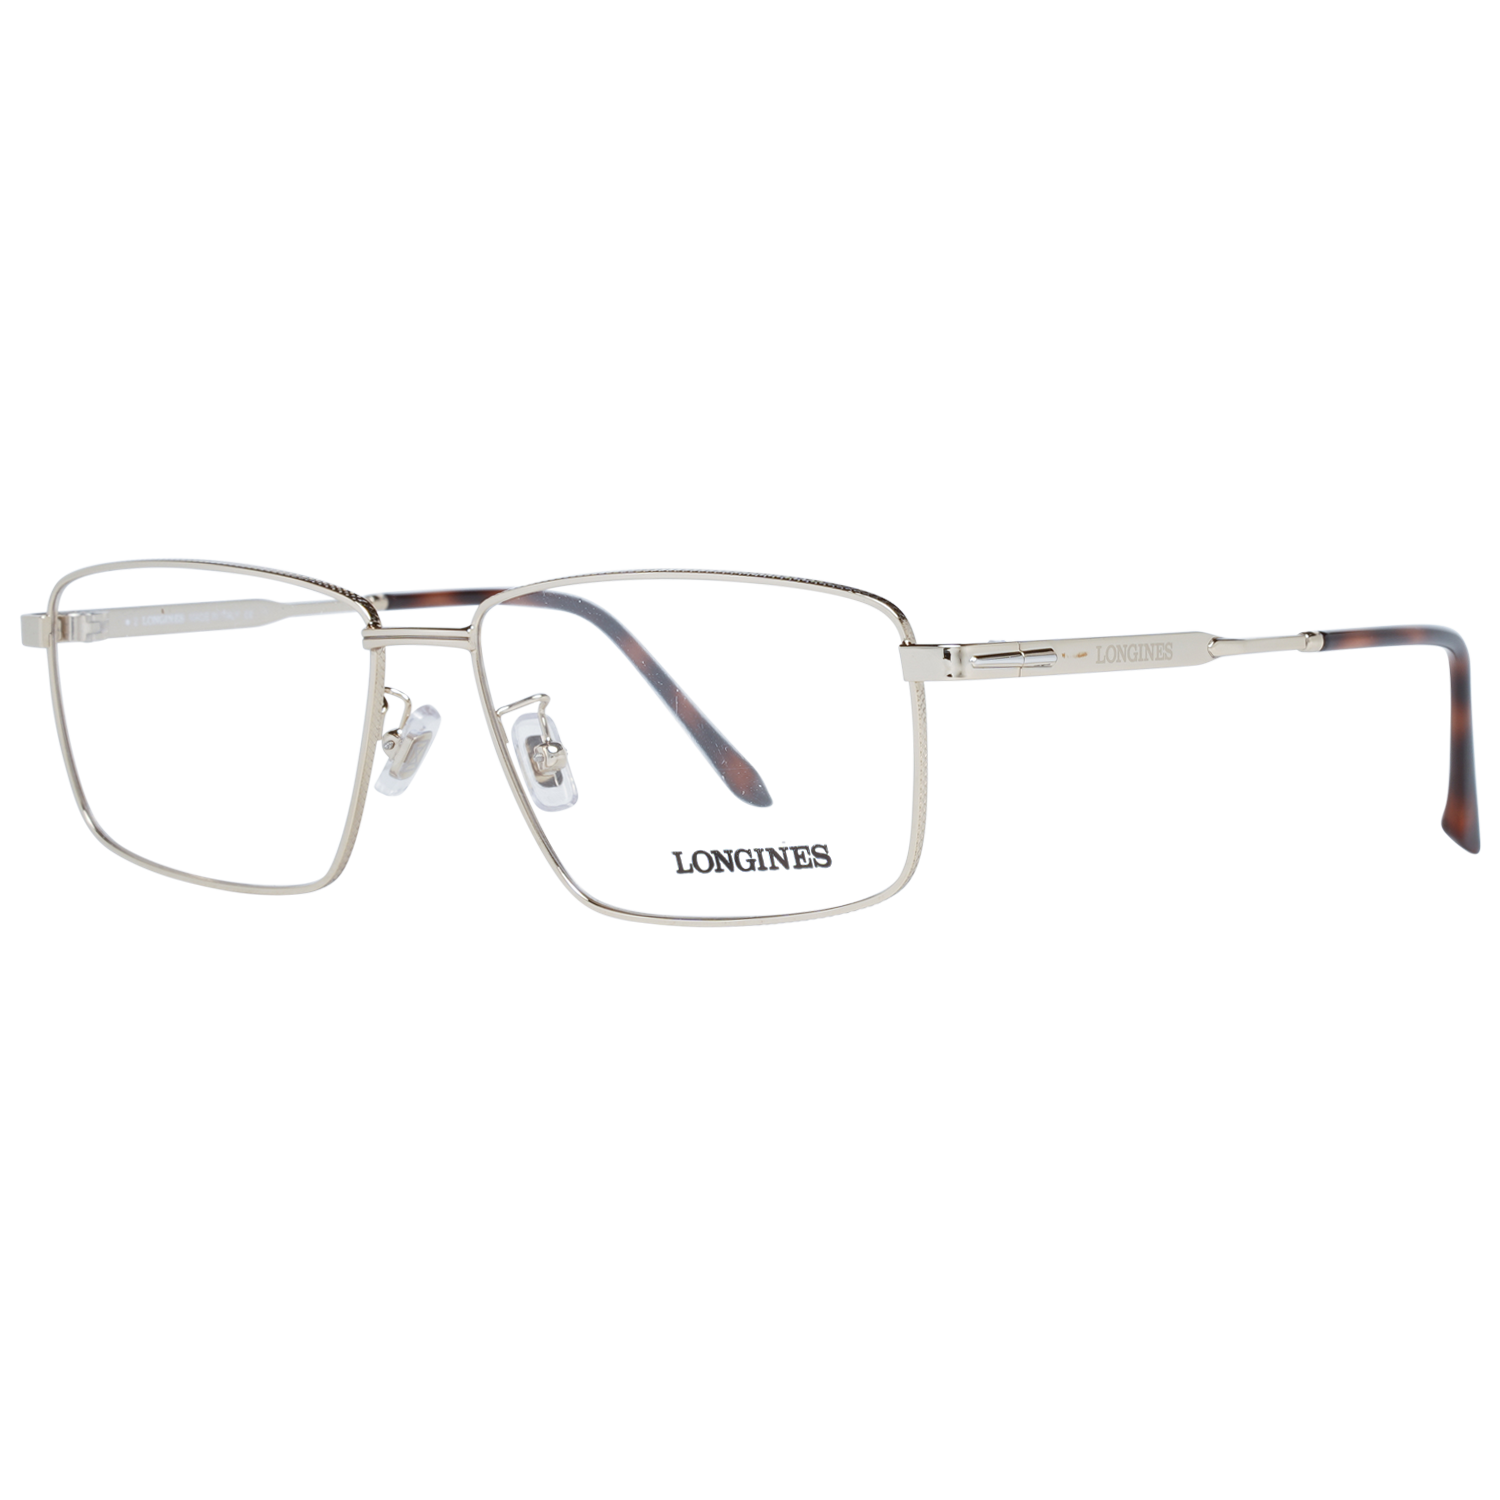 Longines Frames Longines Optical Frame LG5017-H 032 57 Eyeglasses Eyewear UK USA Australia 